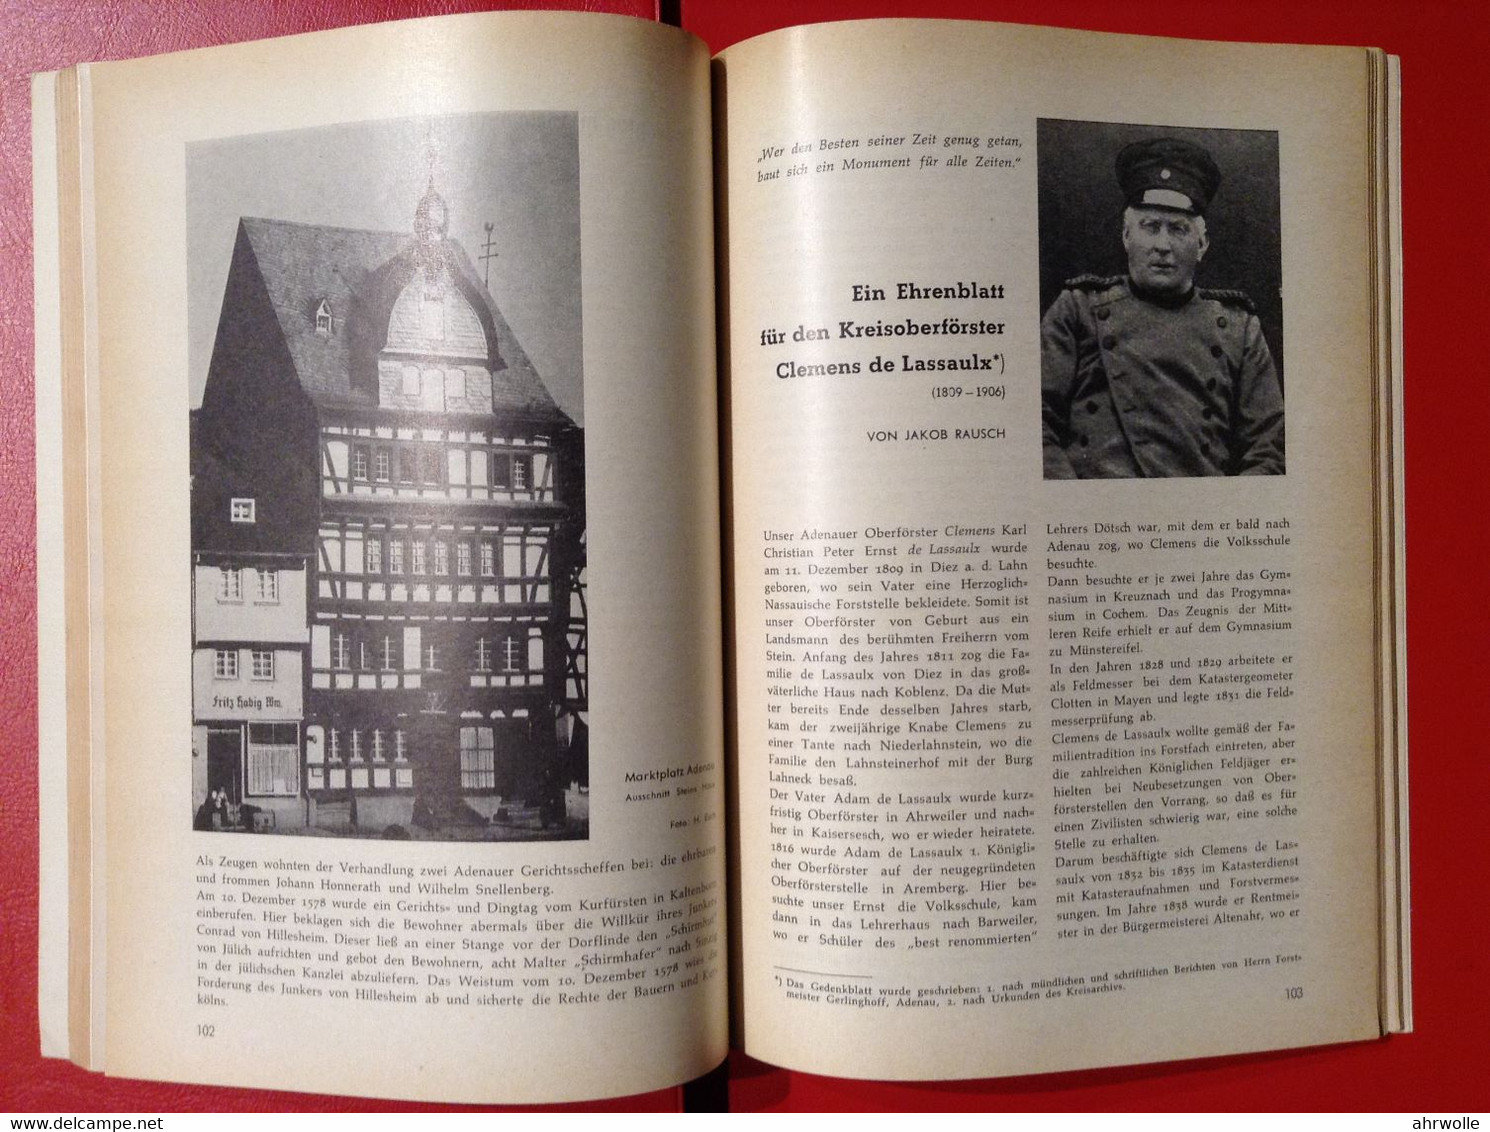 Heimatjahrbuch Kreis Ahrweiler 1963 Ahr - Calendriers